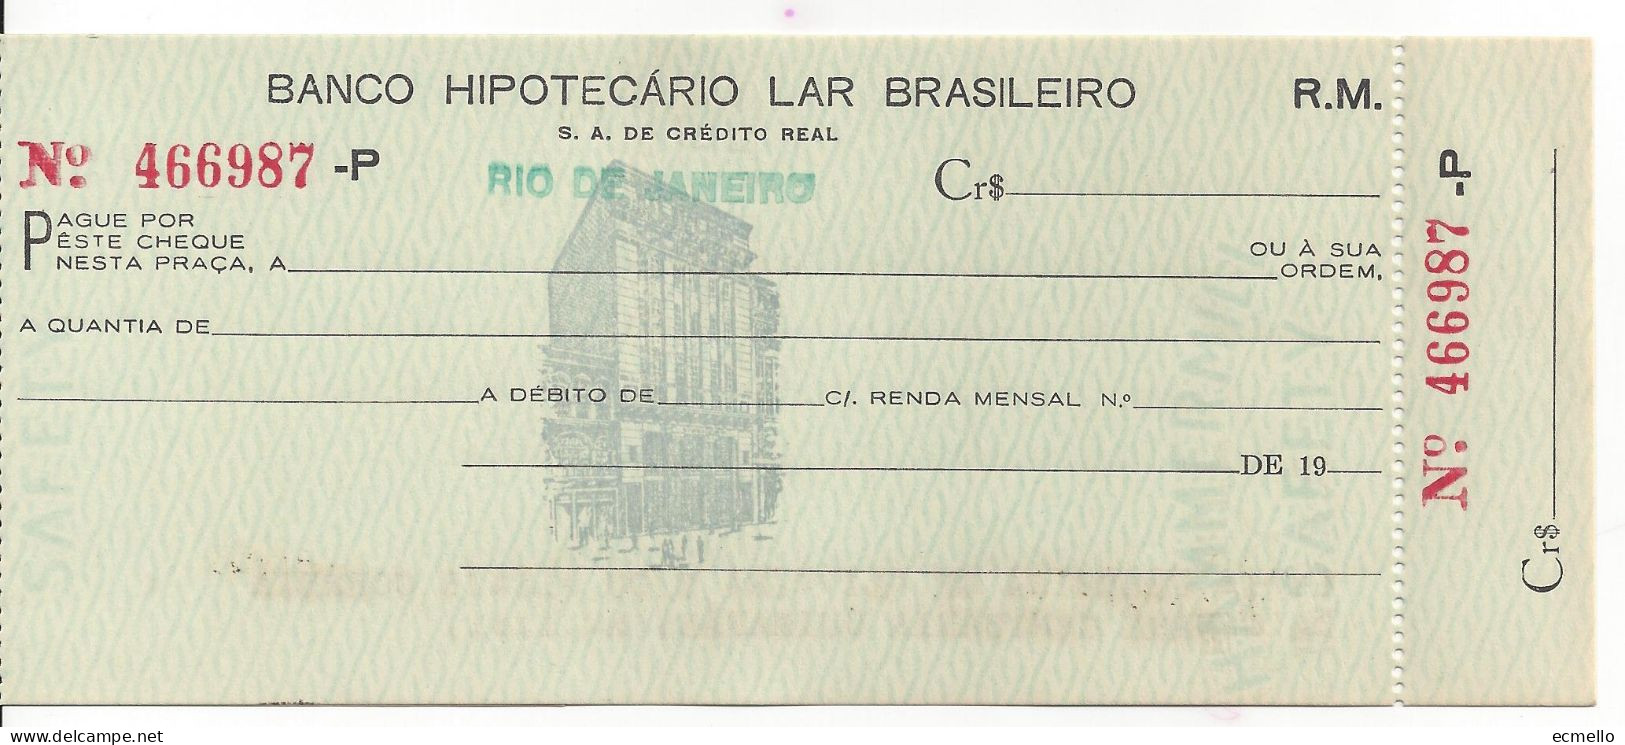 BRAZIL CHEQUE CHECK BANCO HIPOTECARIO LAR BRASILEIRO, RIO, 1950'S BUILDING VIGNETTE VD - Cheques & Traveler's Cheques